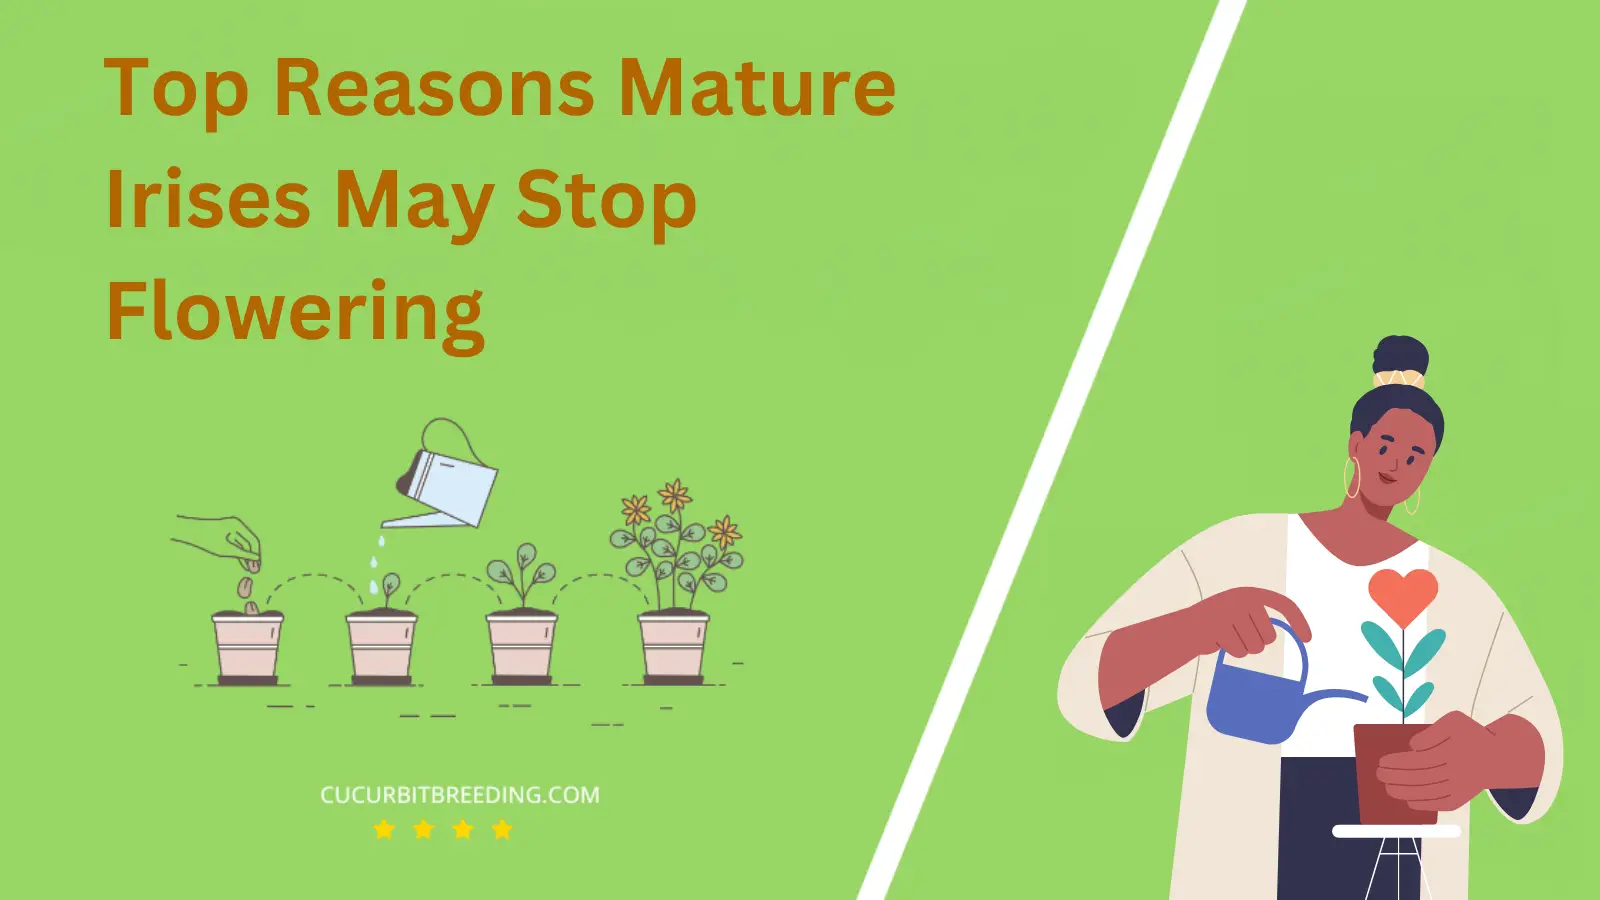 Top Reasons Mature Irises May Stop Flowering